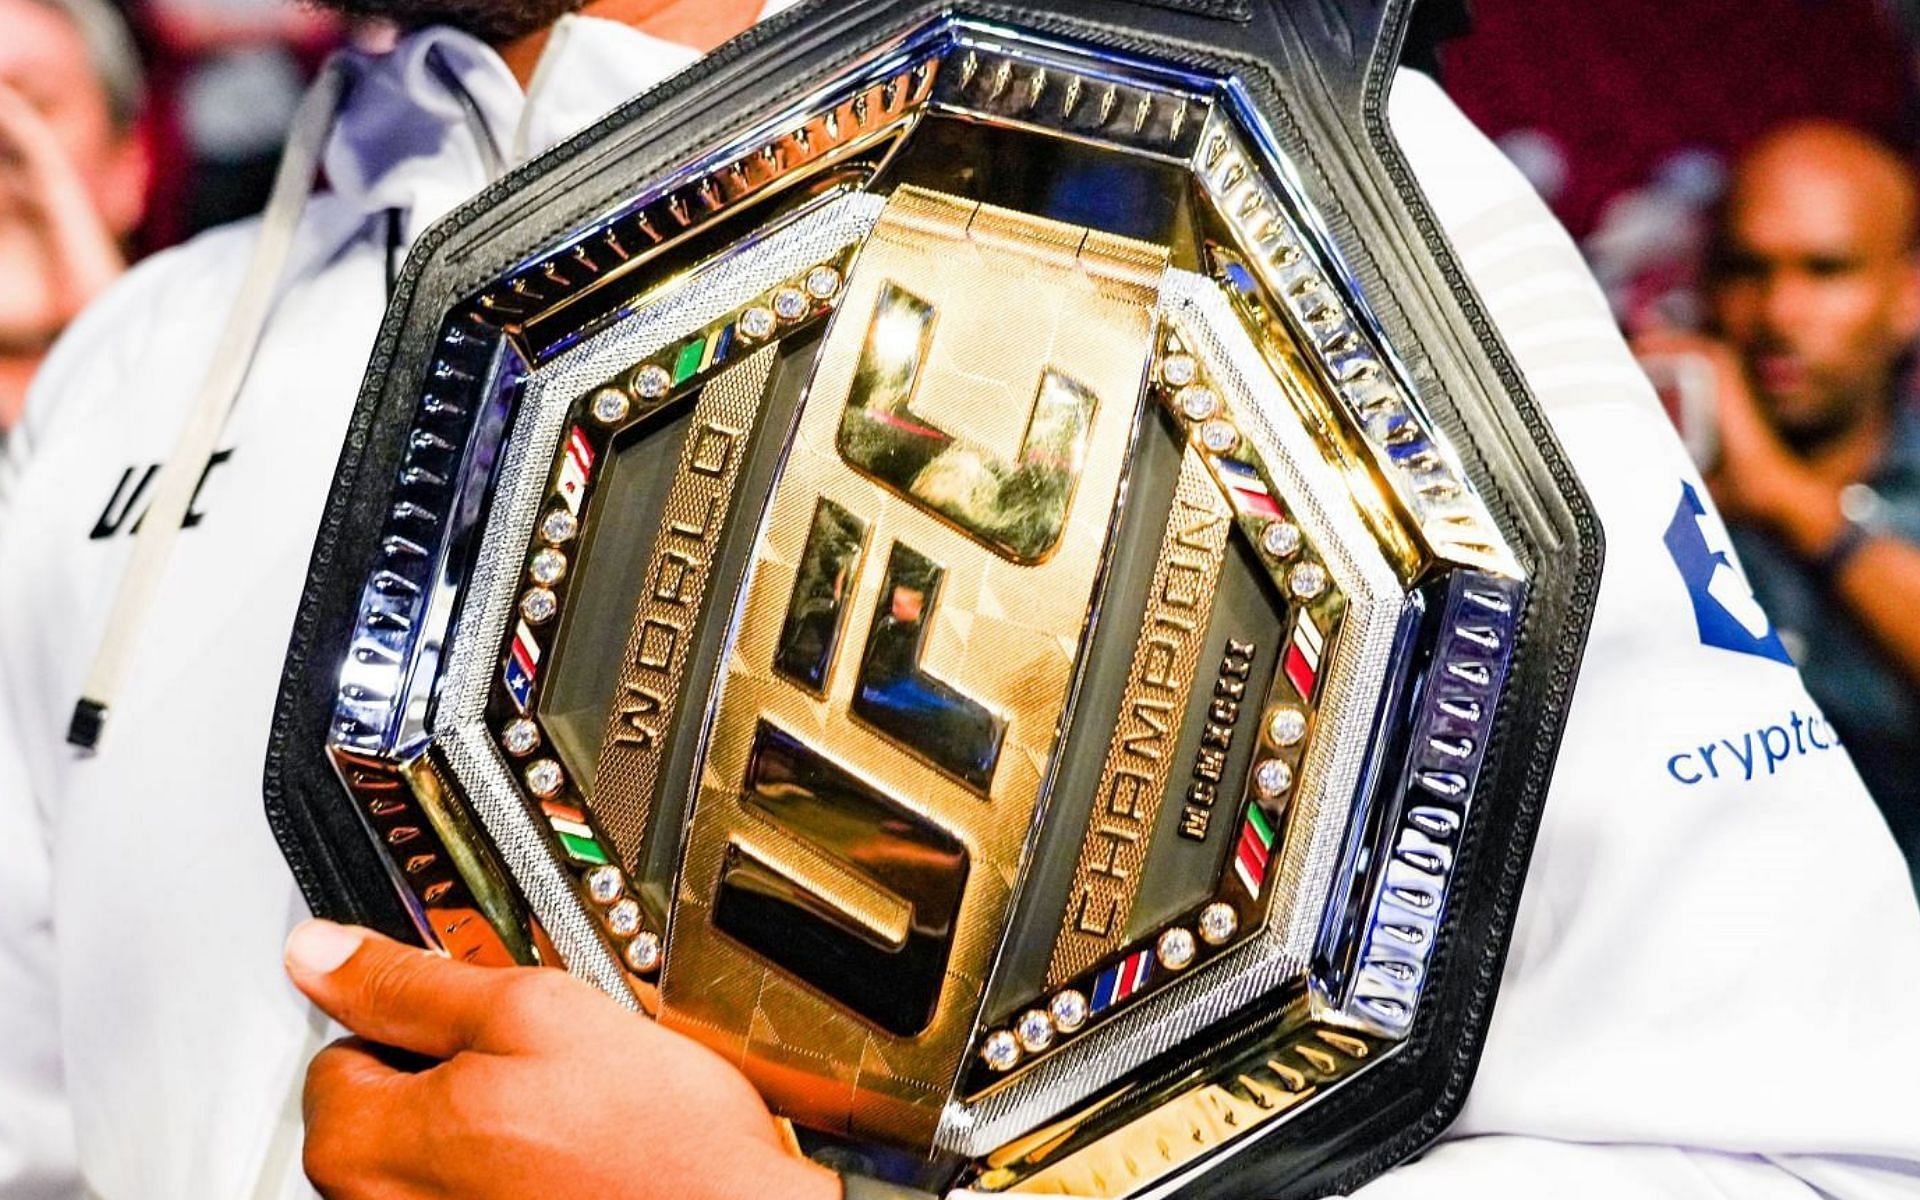 The official UFC world champion belt